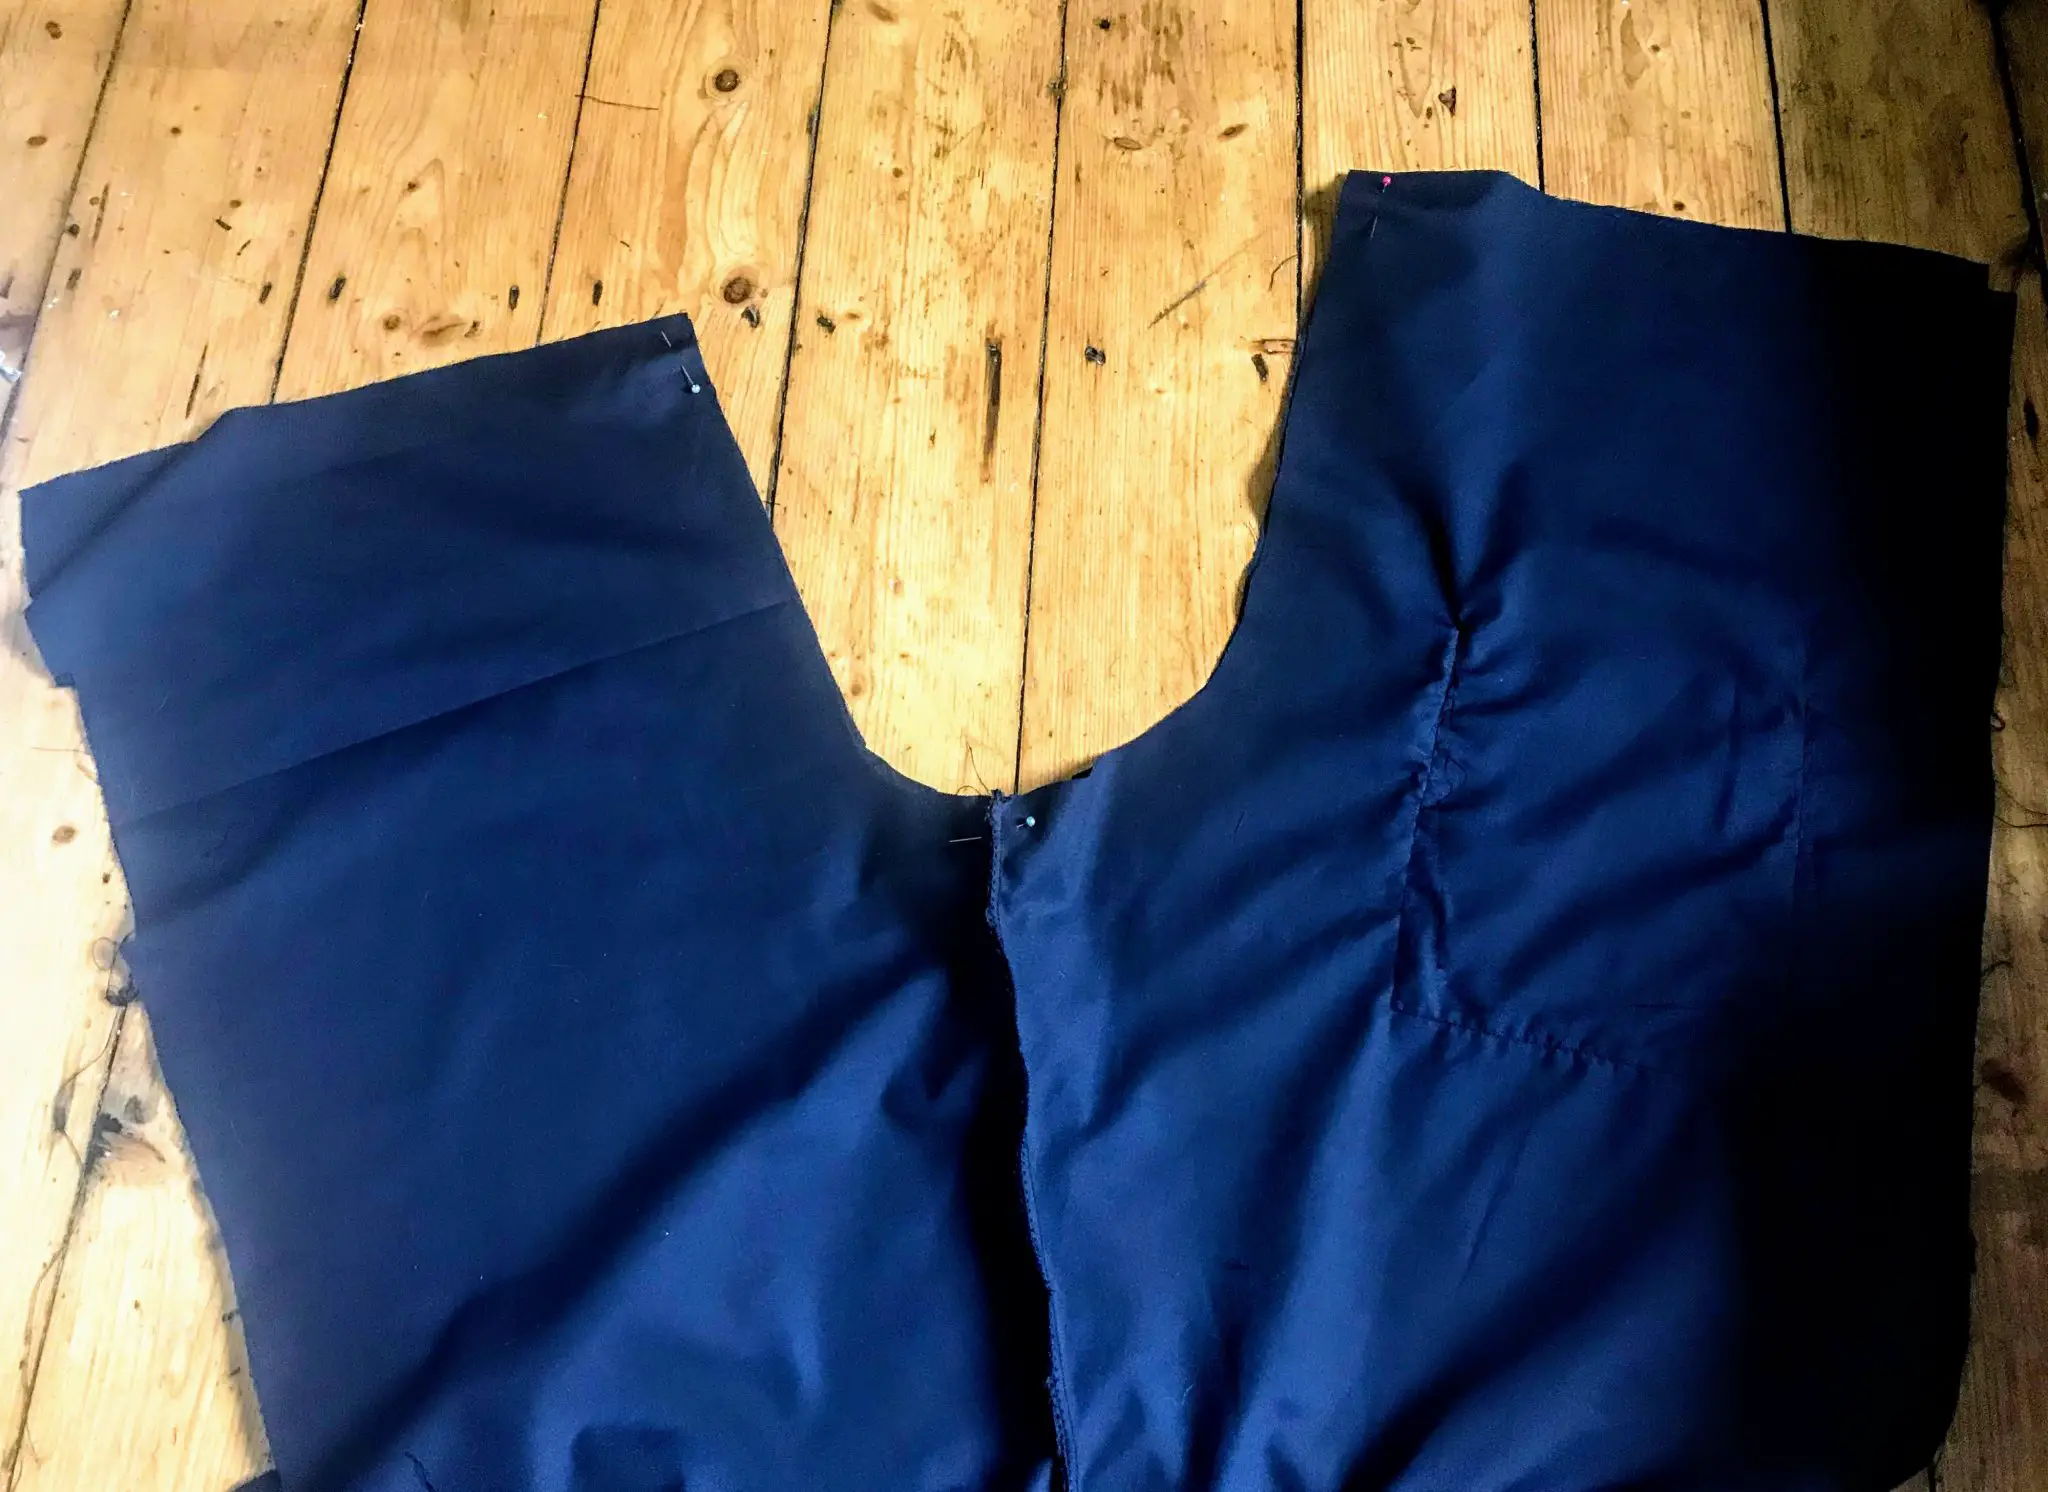 Sewing a crotch seam in scrubs